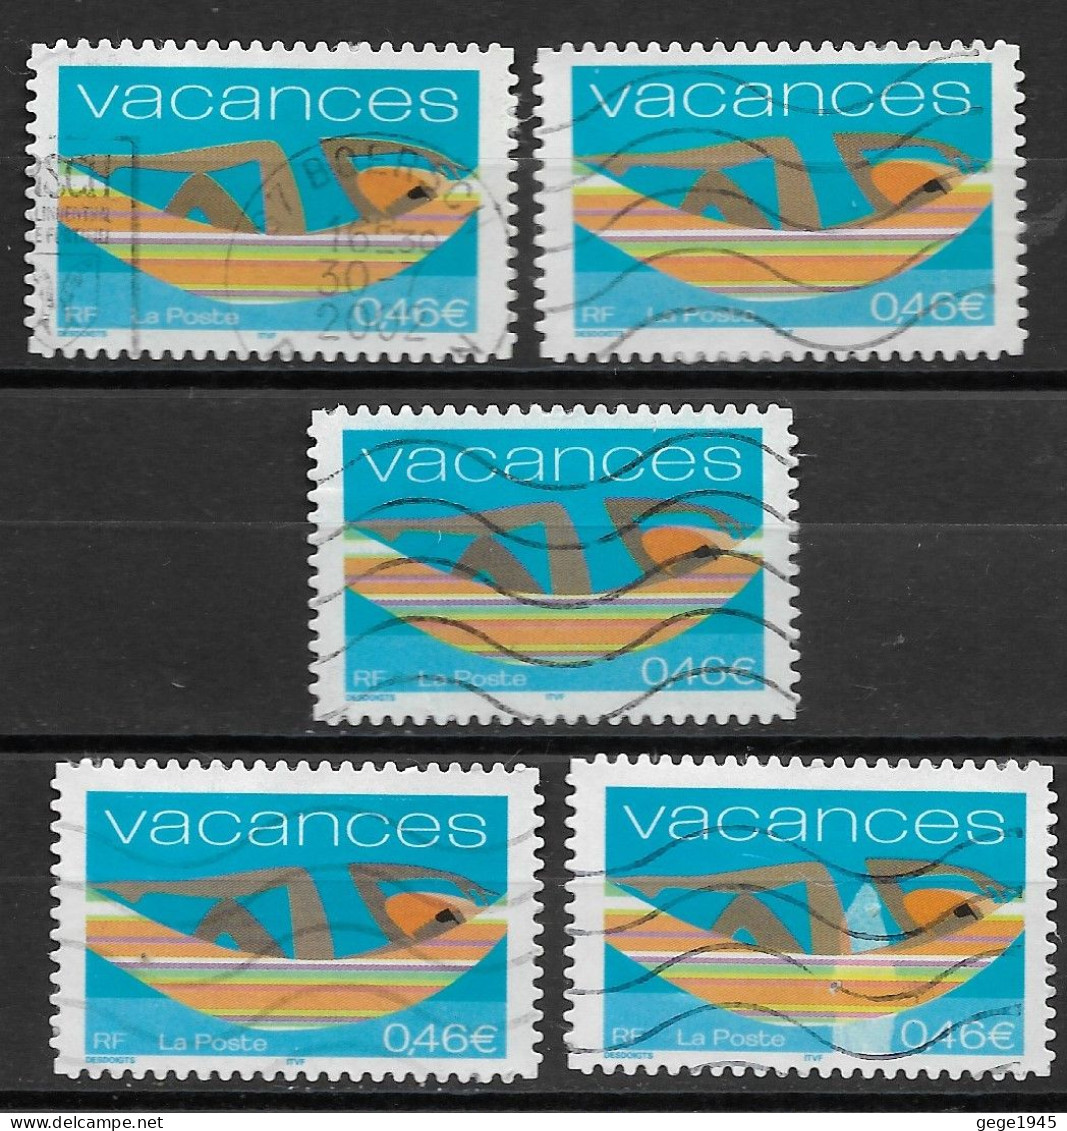 France 2002 Oblitéré N° 3494   " Autoadhésif  N° 33  - Vacances ( 5 Exemplaires )  Avec Nuances Sur Les Jambes - Used Stamps